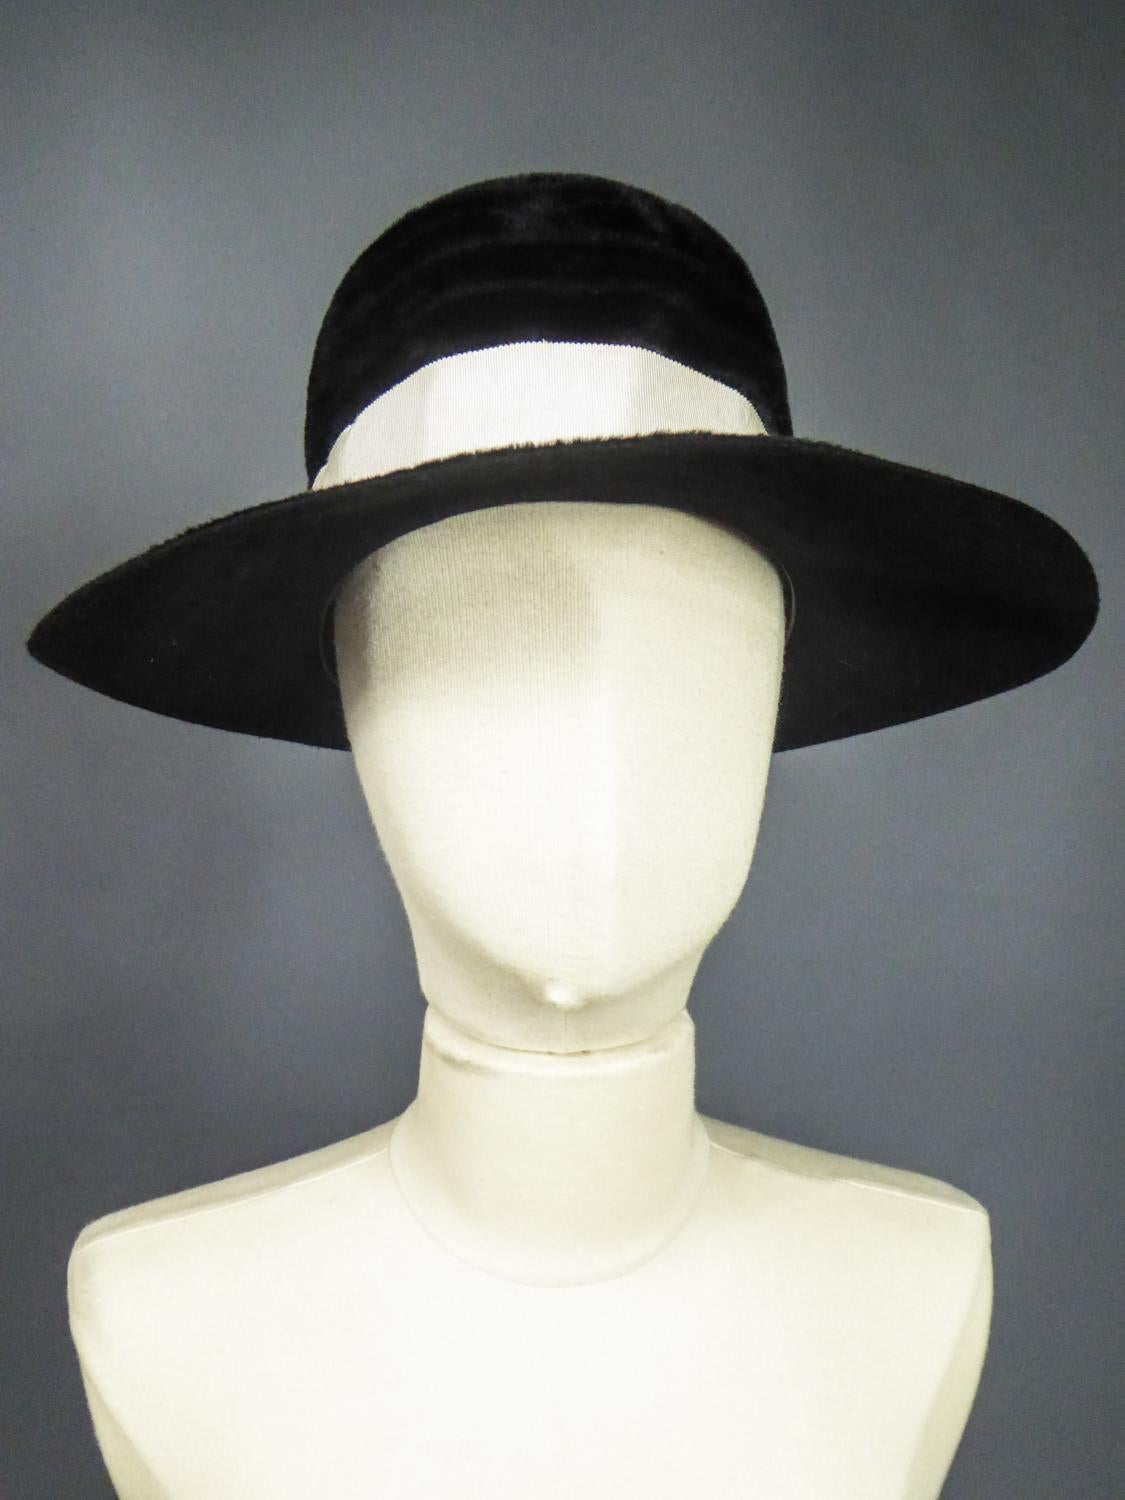 A Harrods Plush Felt Hat by Atelier Lucas - London Circa 1970 For Sale ...